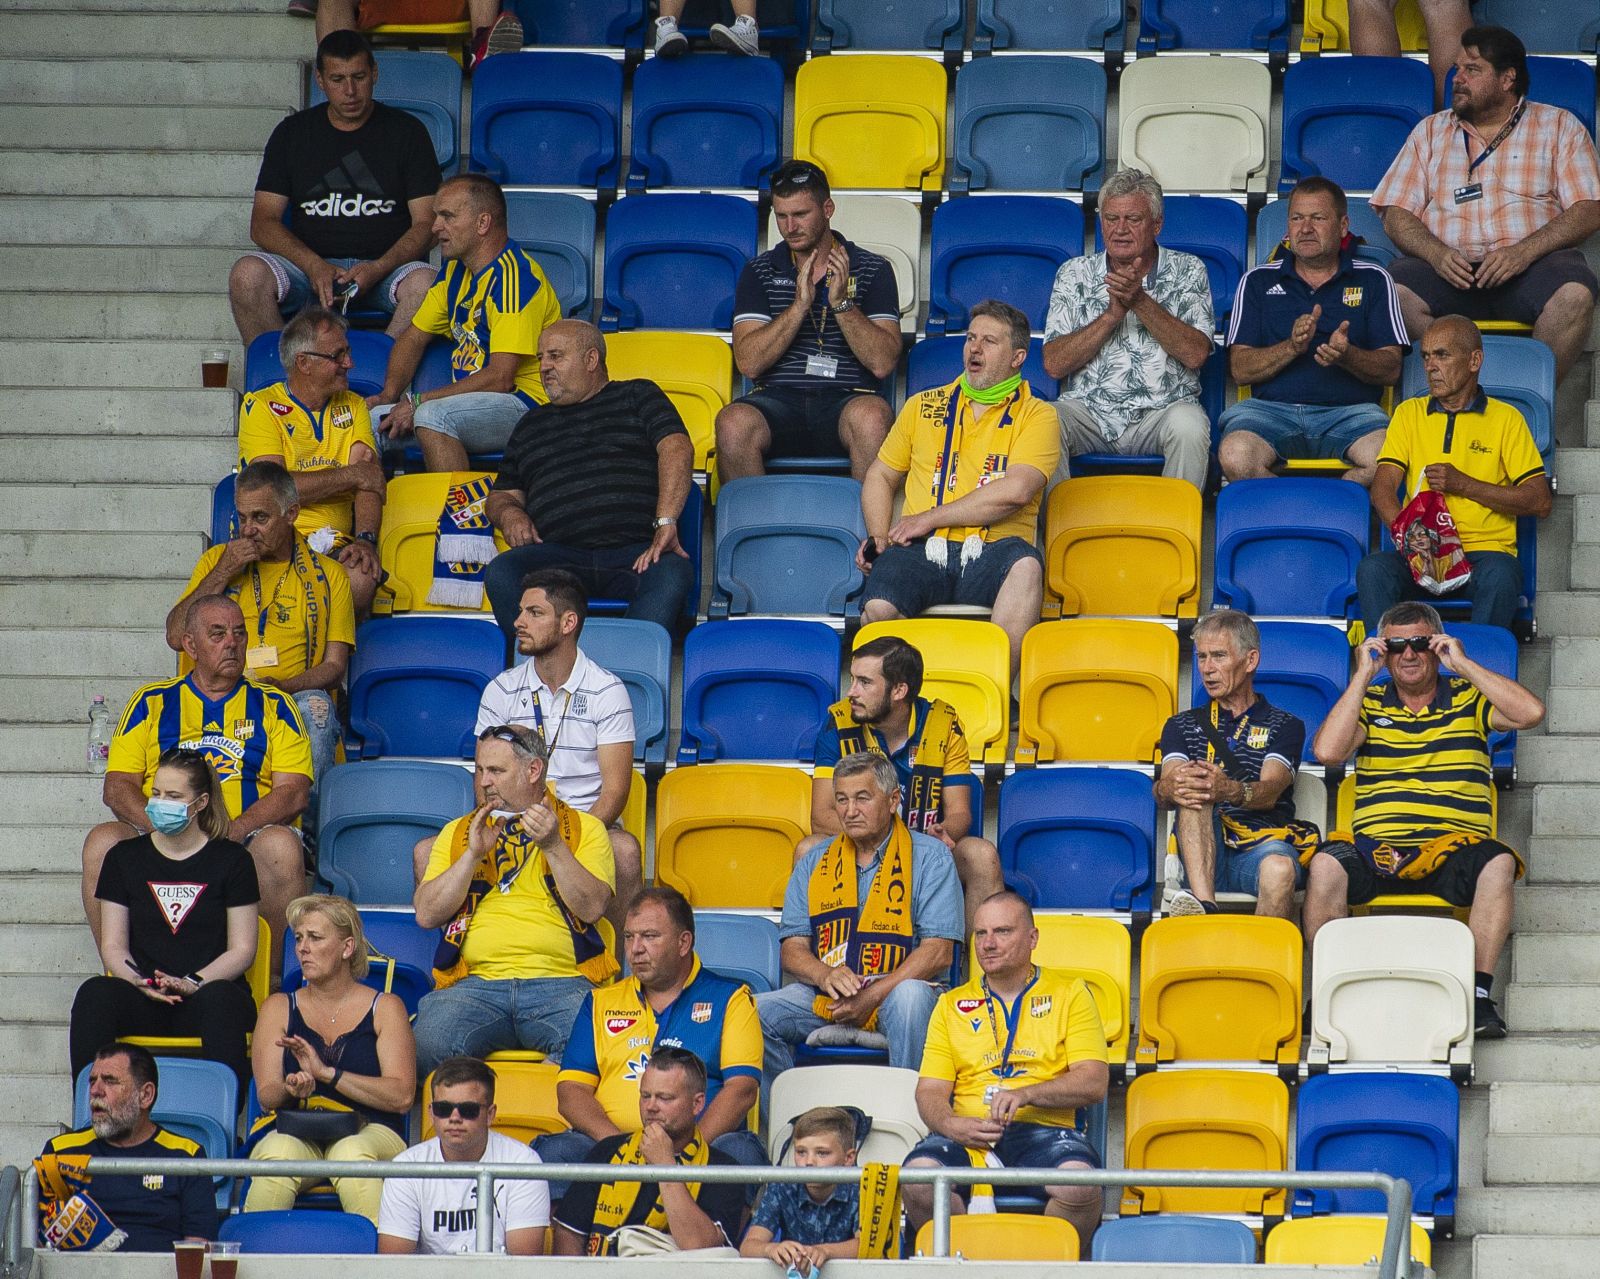 Prvý futbalový zápas po uvoľnení opatrení odohrali v Dunajskej Strede: Fanúšikom chýbali rúška a sedeli si, ako sa im zachcelo